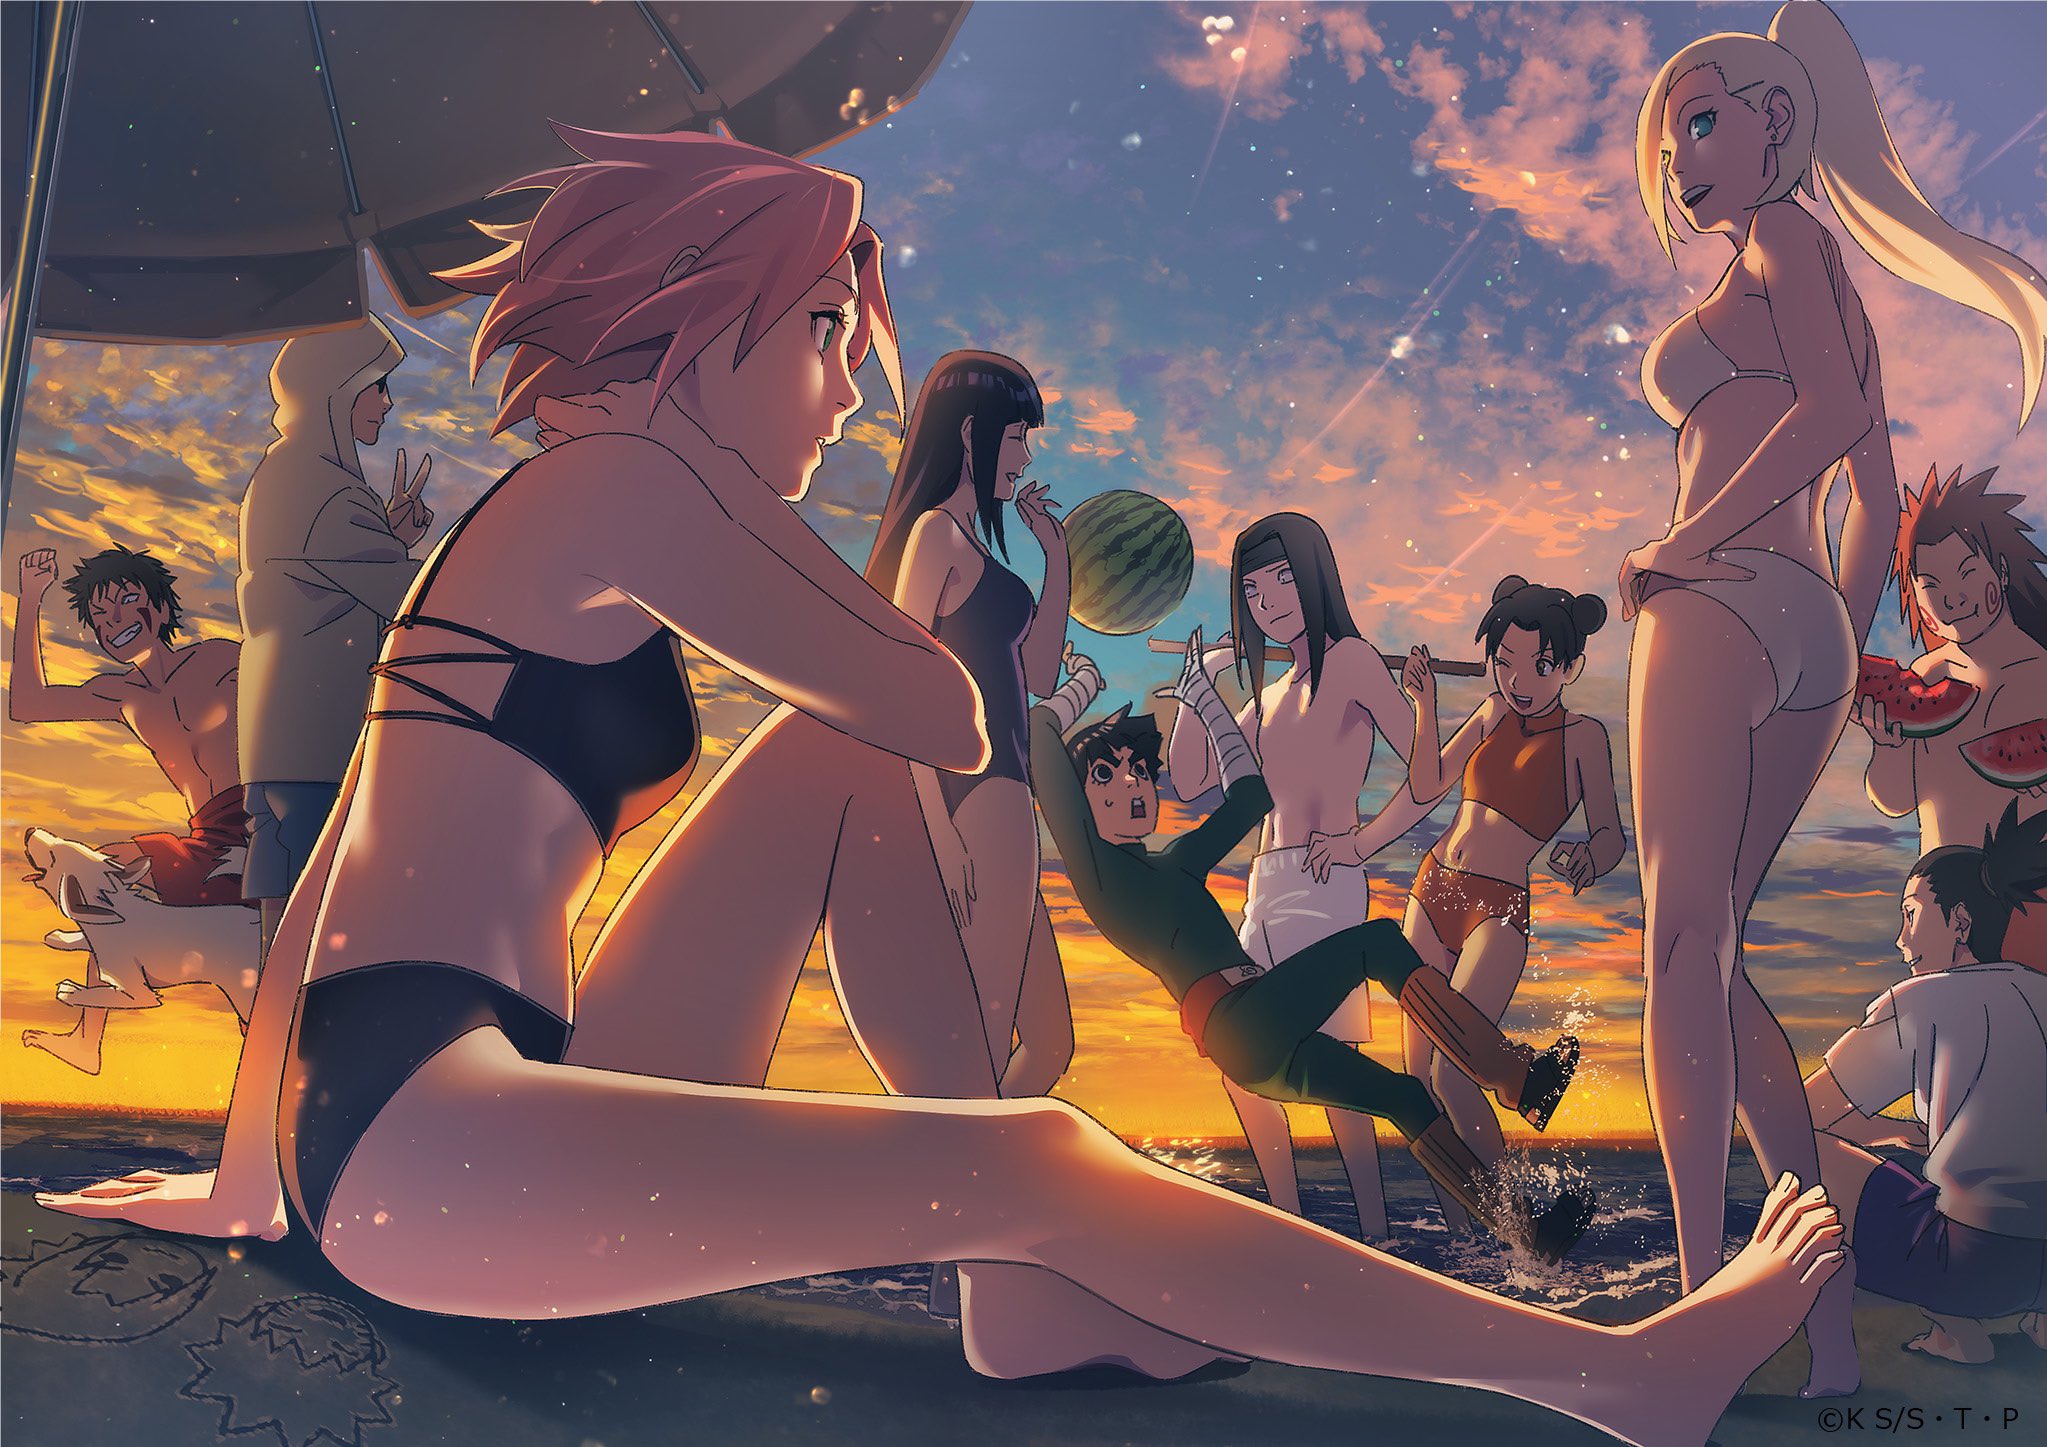 NARUTO 同期10人が海辺で過ごす 夏の終わりを告げる描き下ろし解禁!